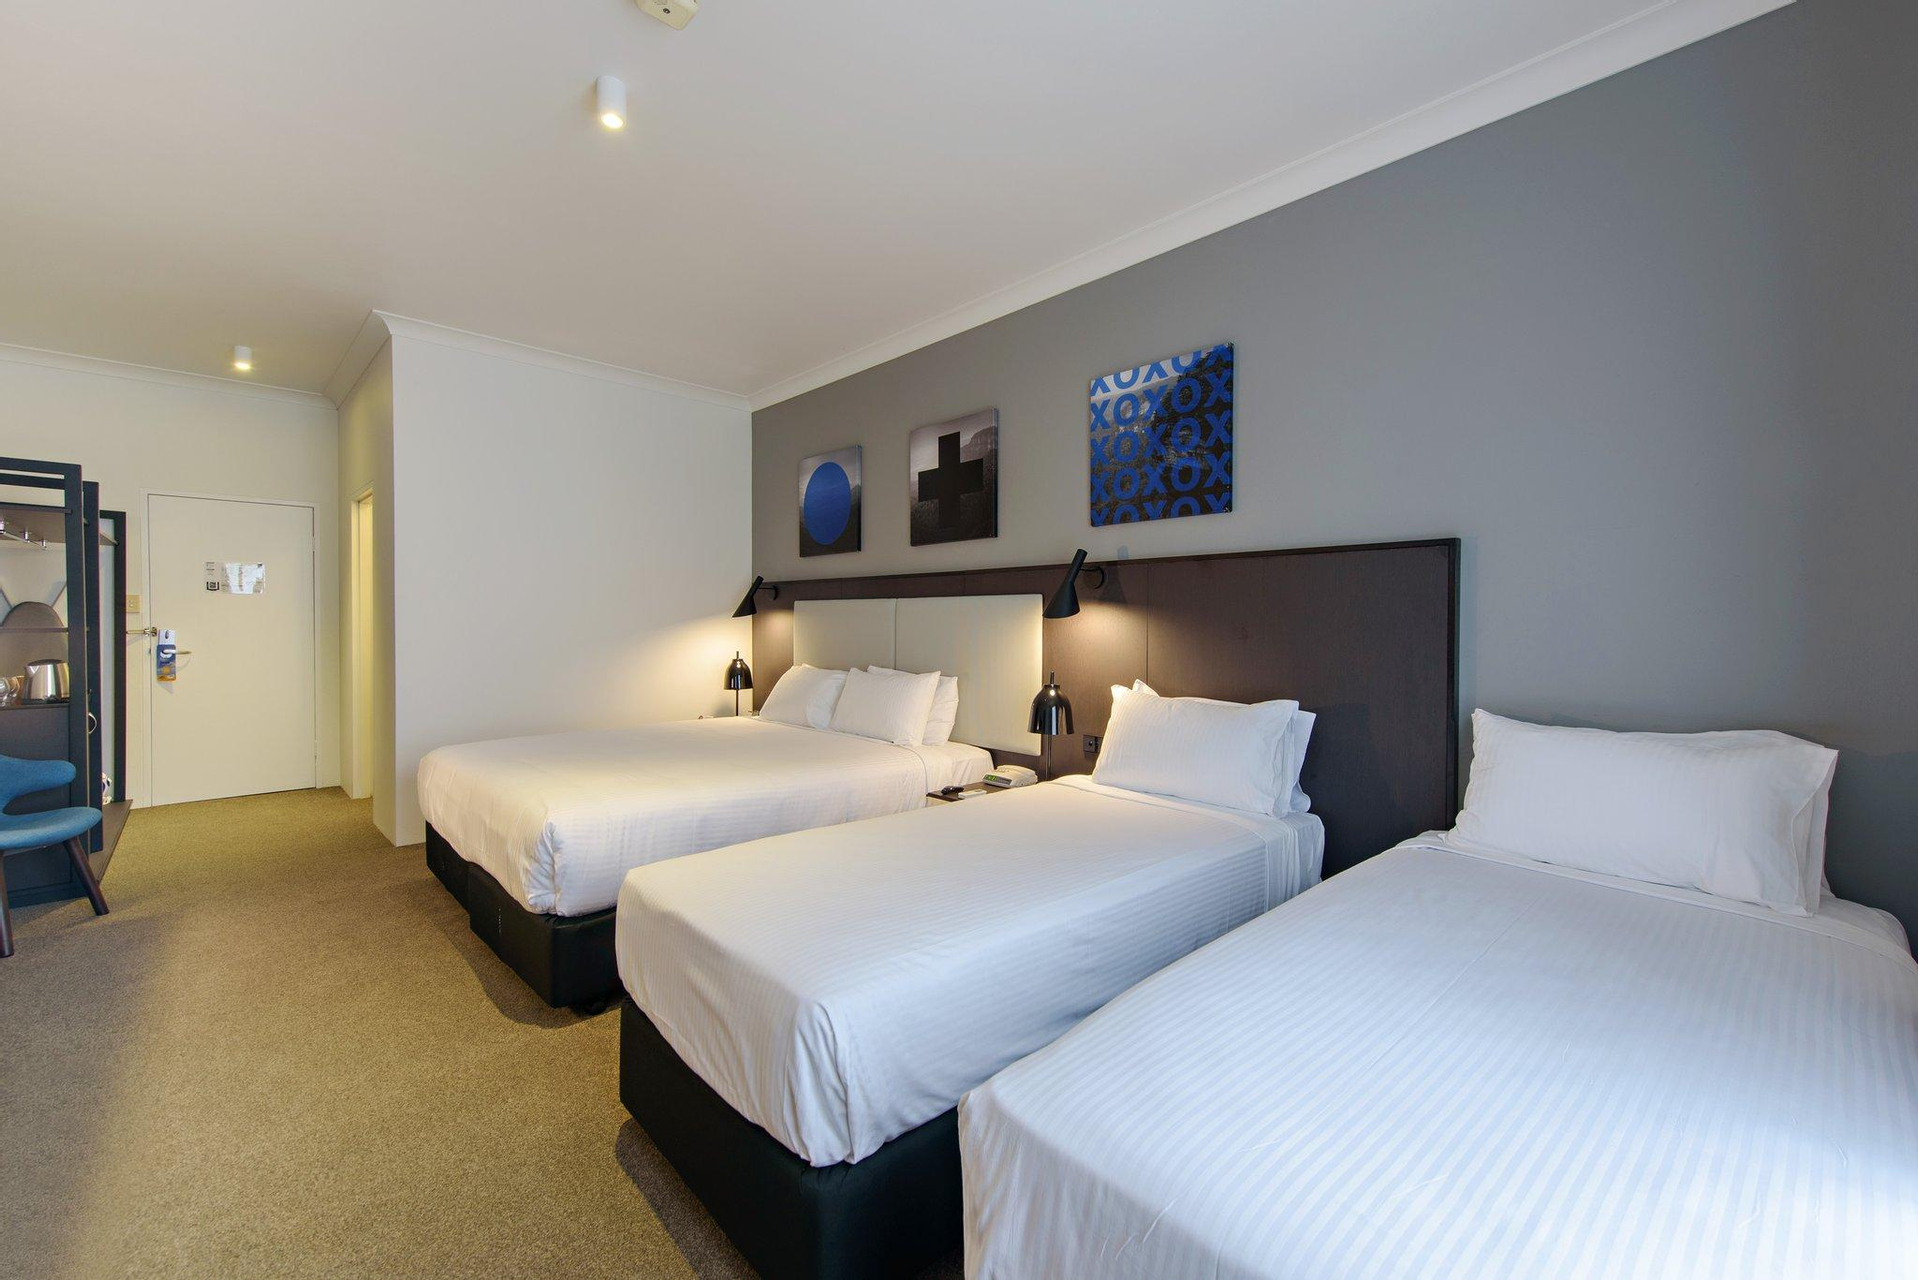 Bedroom 2, CKS Sydney Airport Hotel, Rockdale